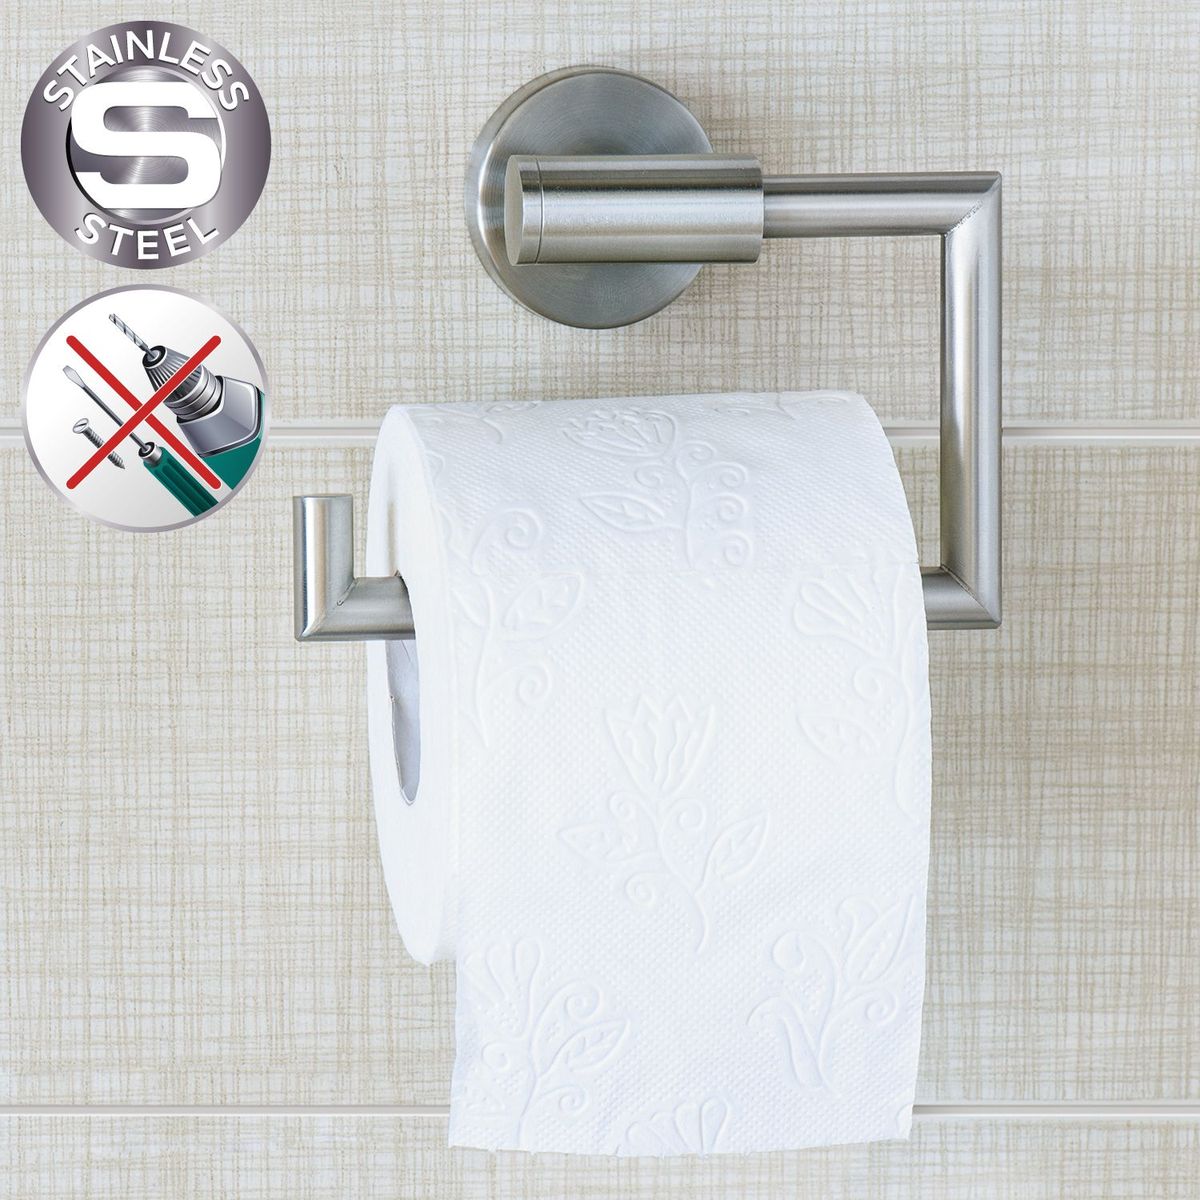 фото Держатель для туалетной бумаги Wonder Worker "Hold", цвет: серый металлик, 15,5 x 13,5 x 5,4 см